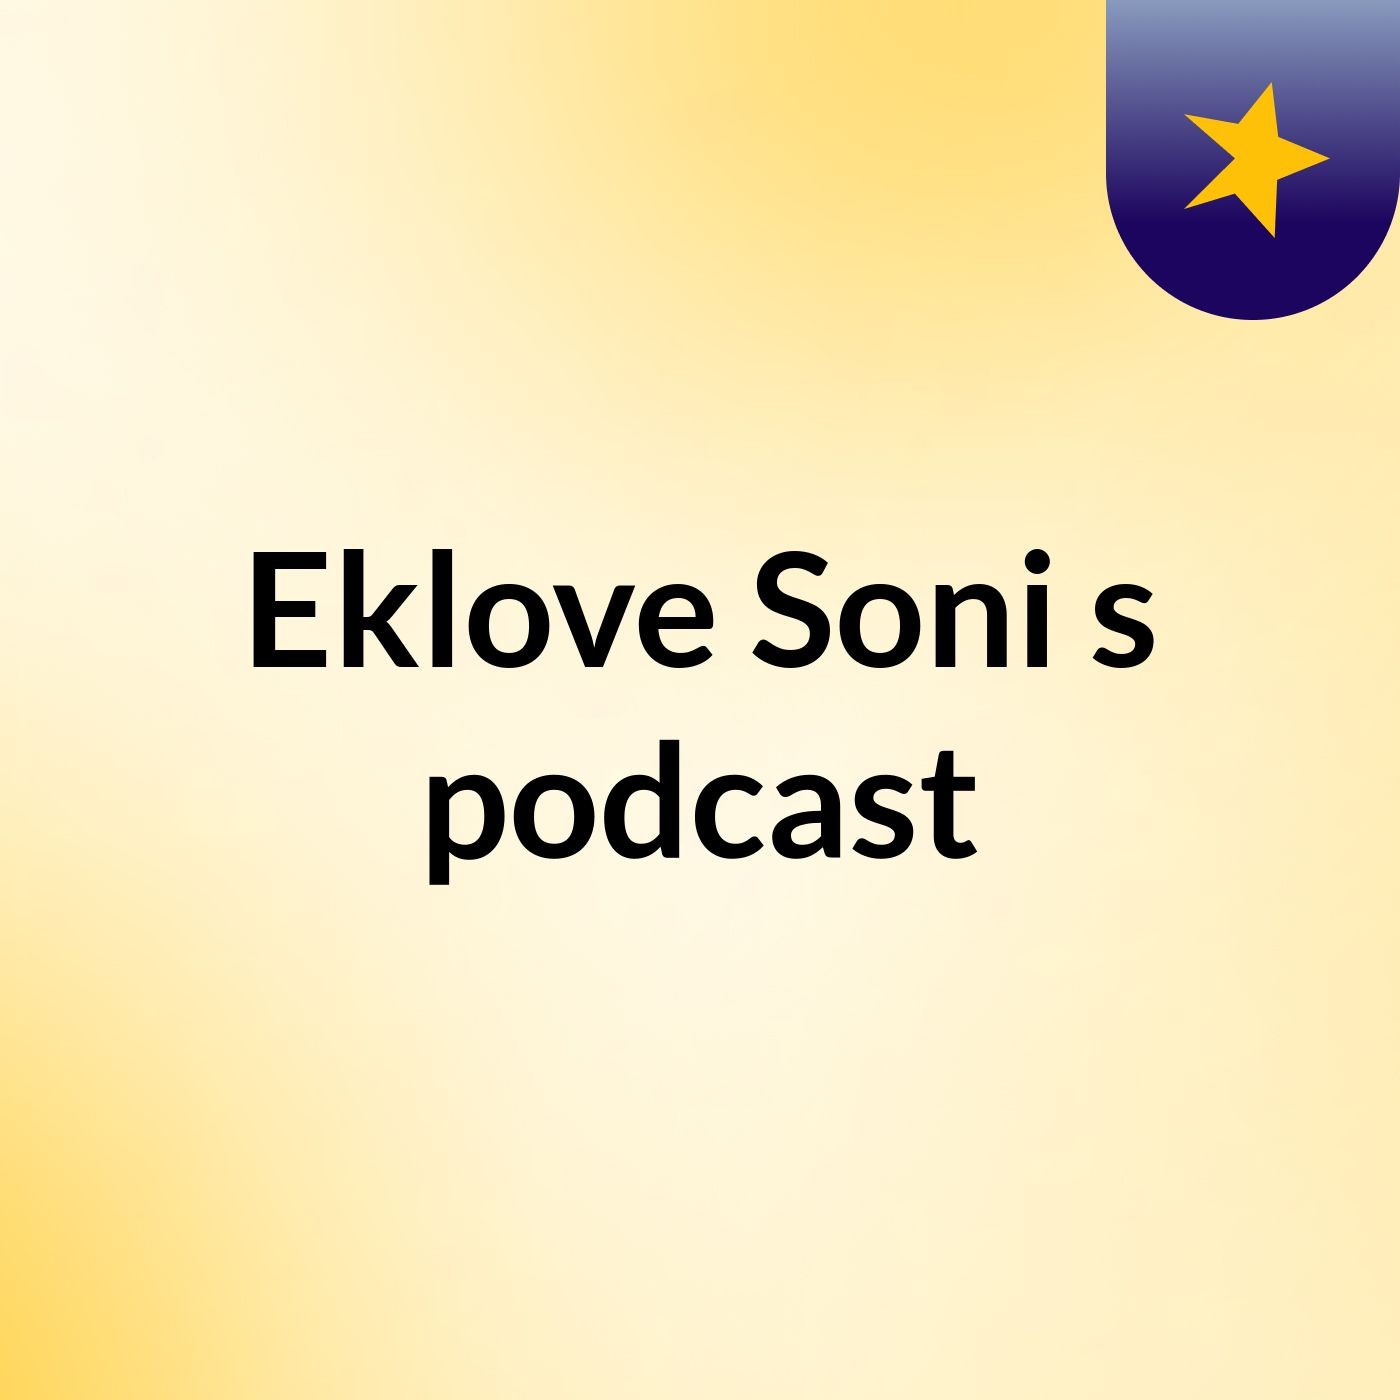 Eklove Soni's podcast